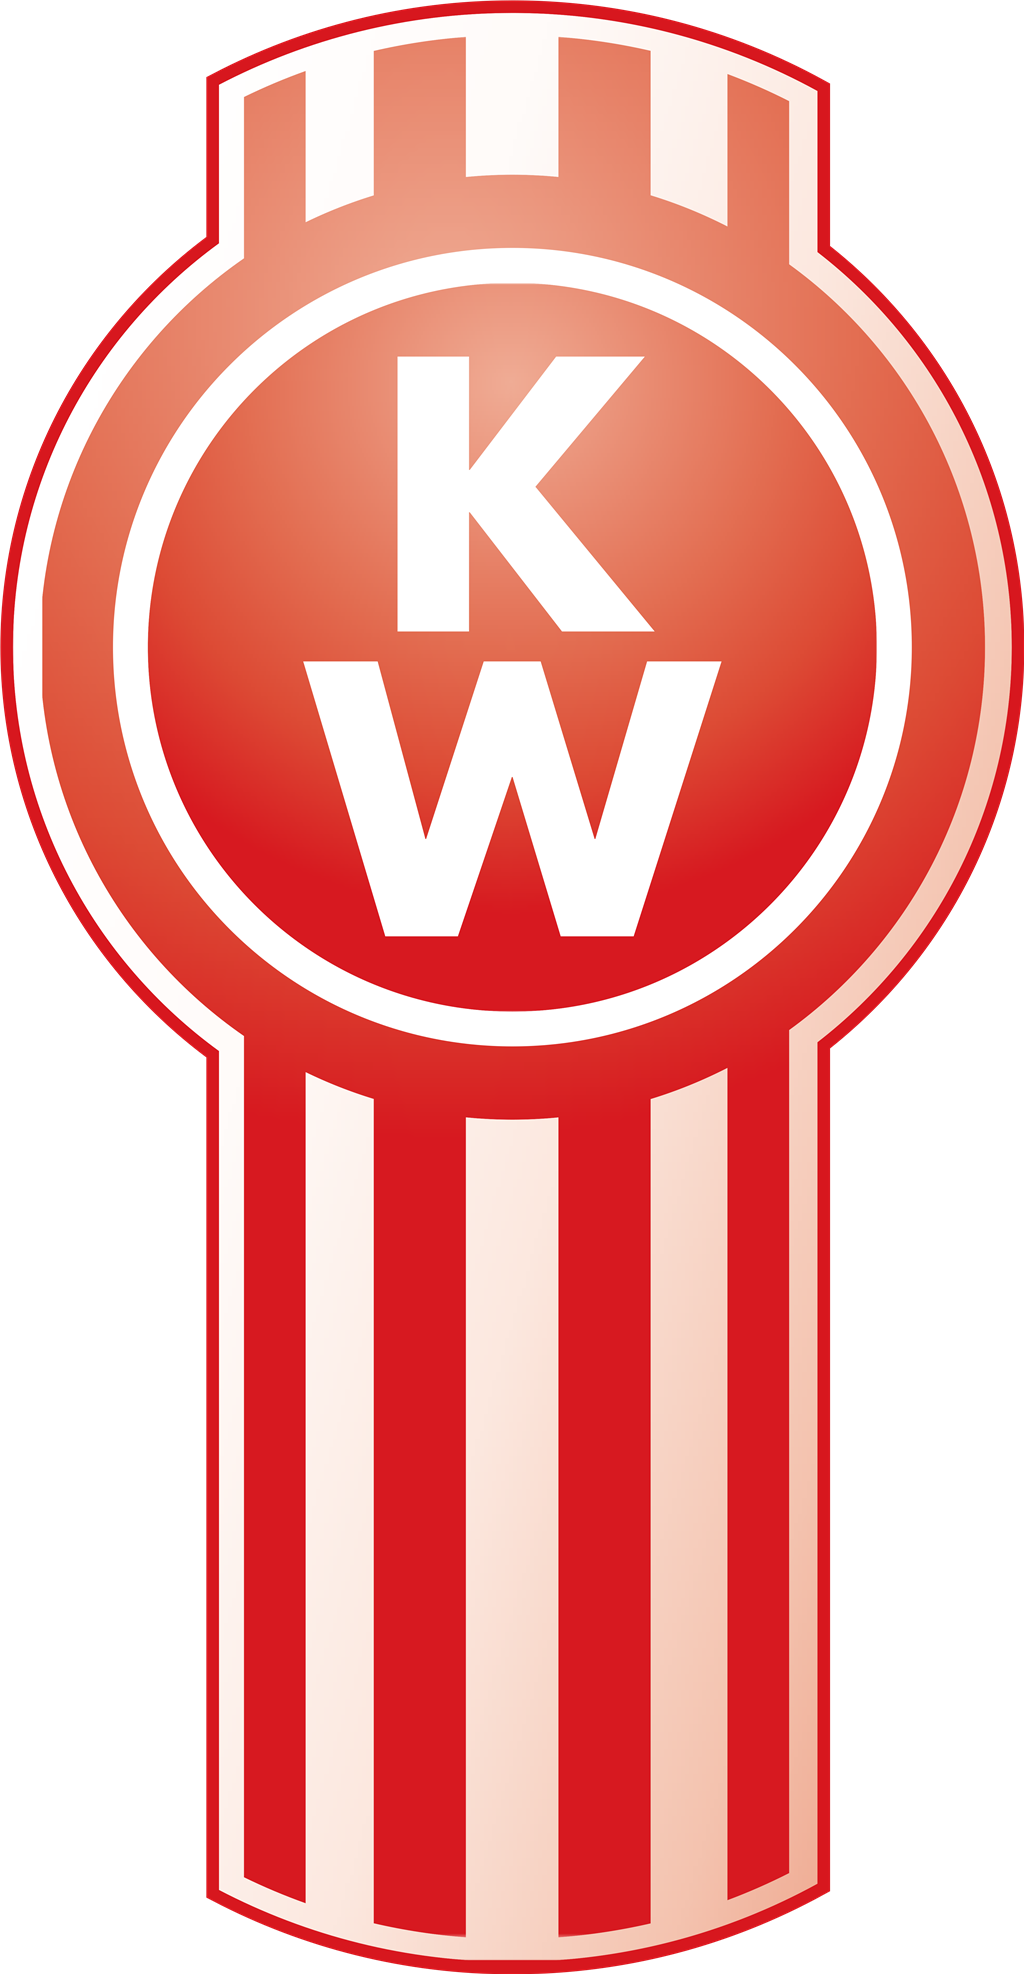 Kenworth logotype, transparent .png, medium, large